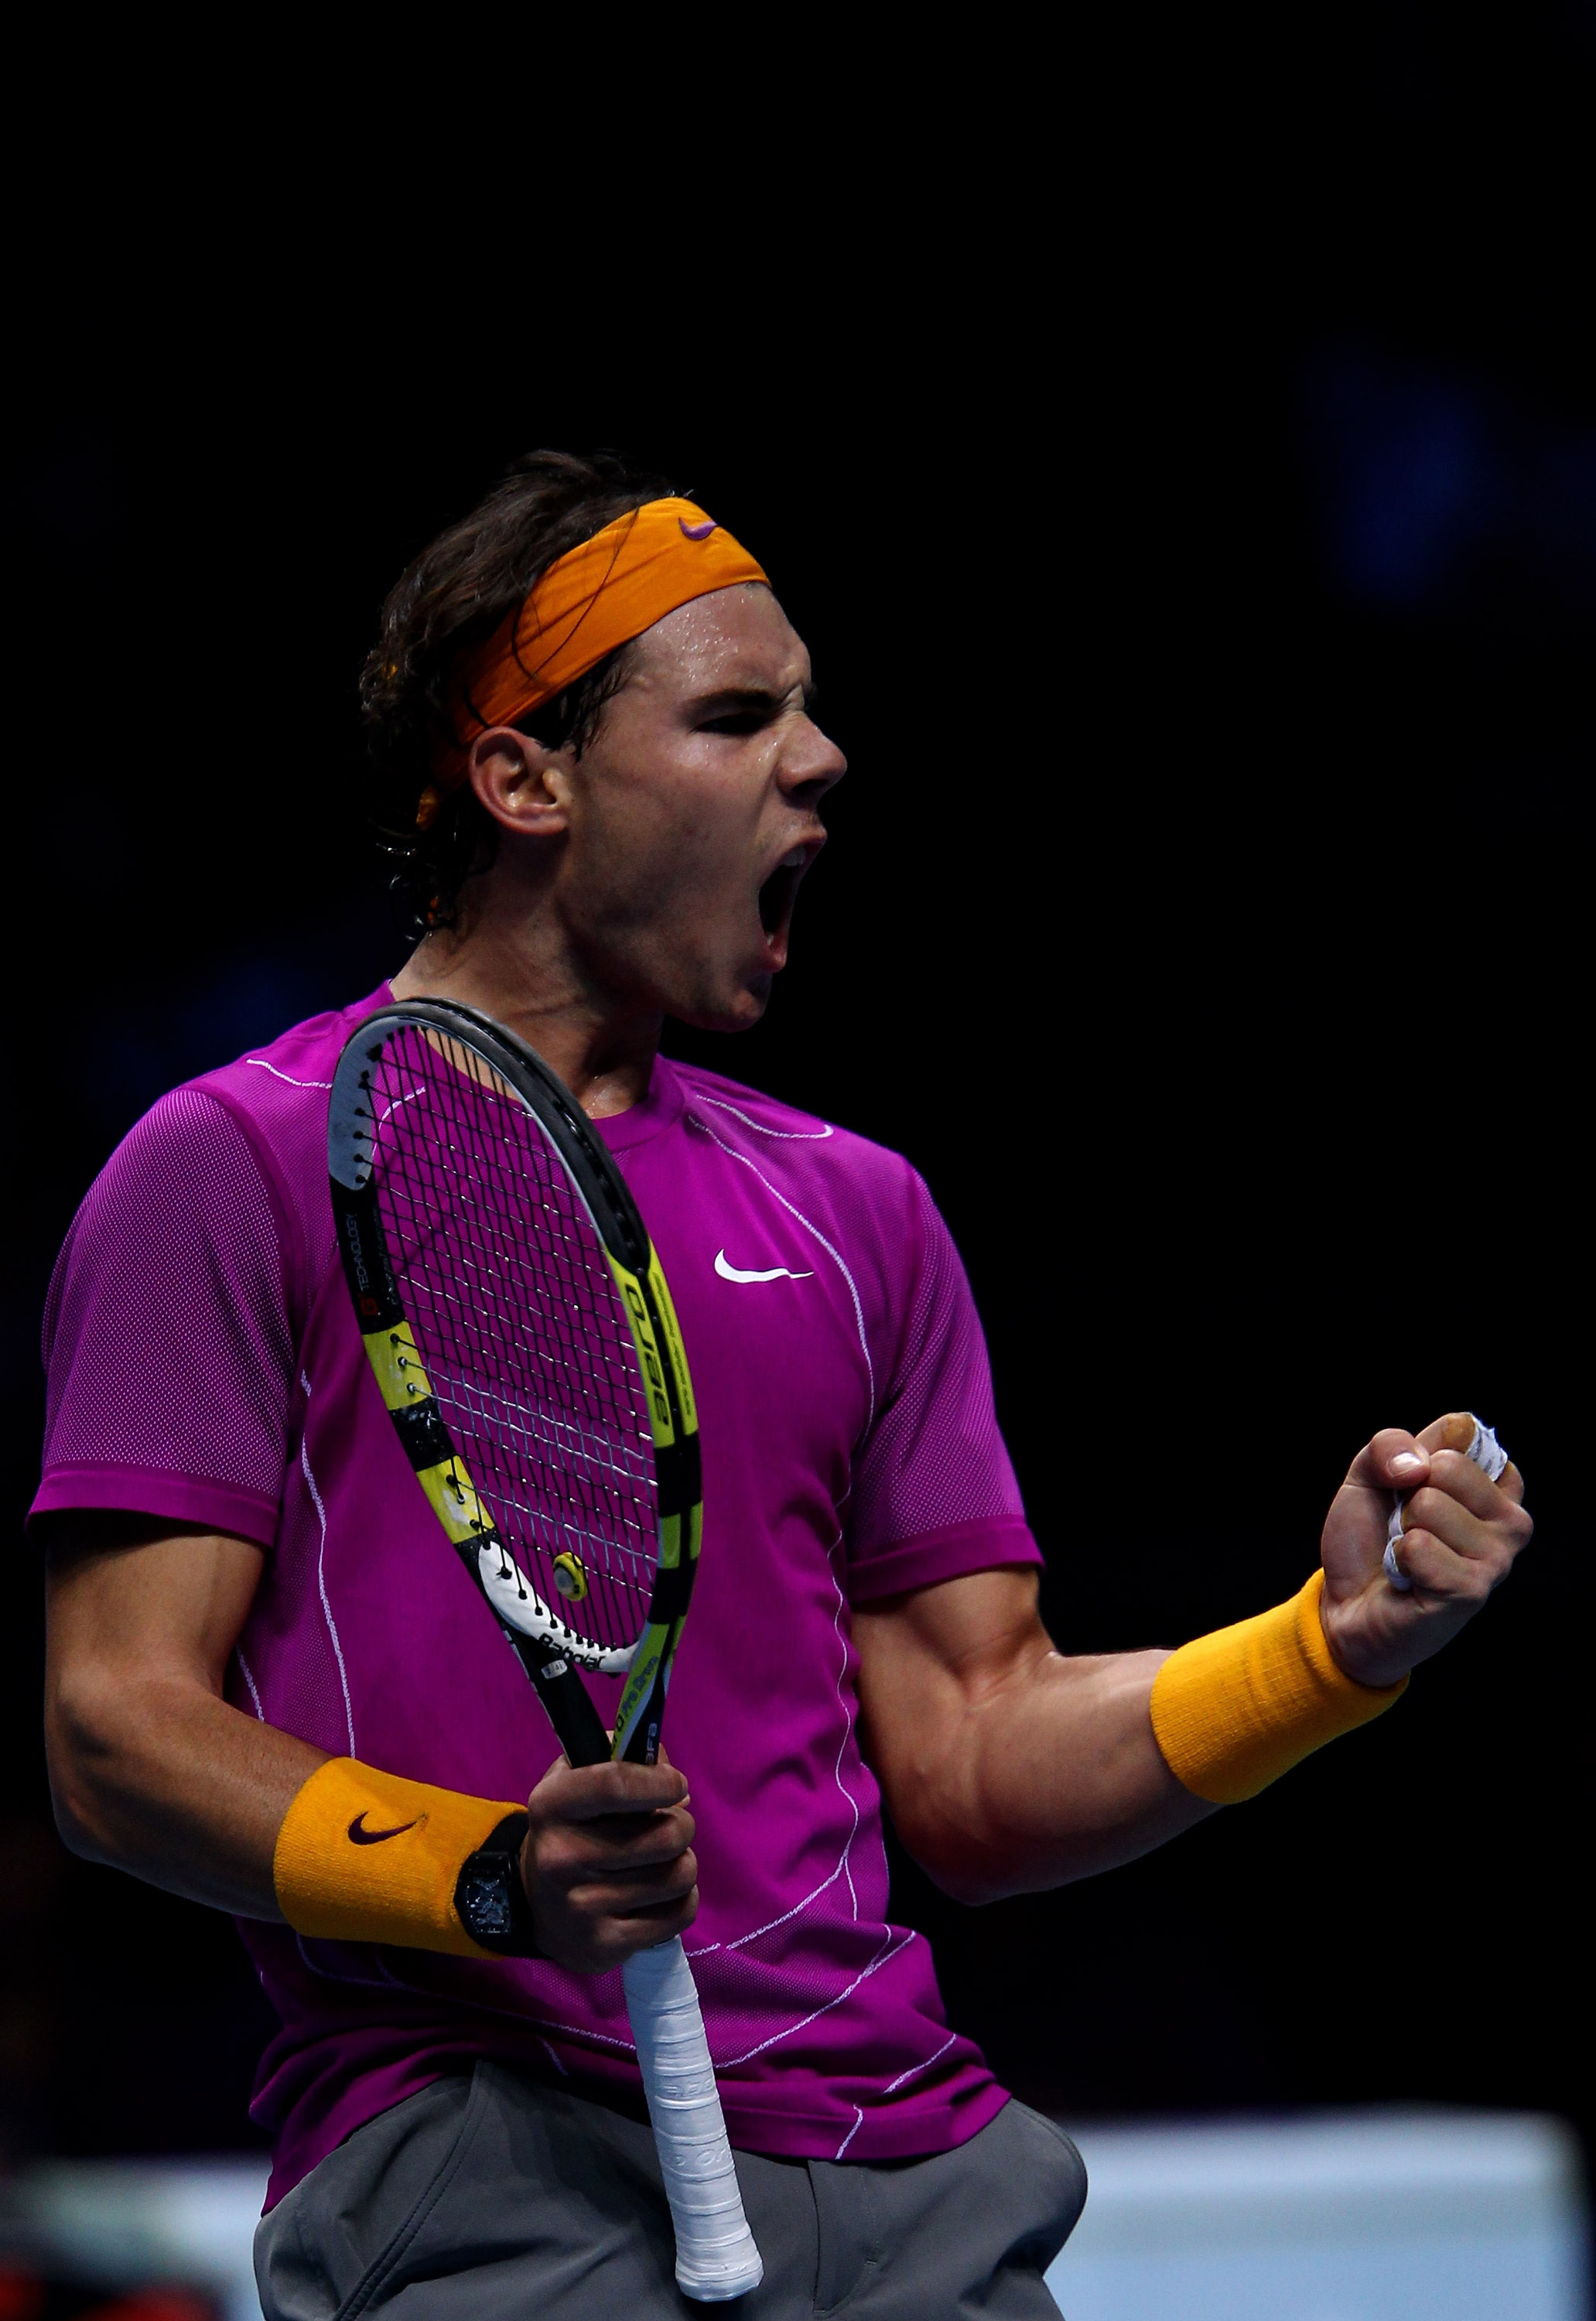 Rafael Nadal: The Tennis Star's Top 5 